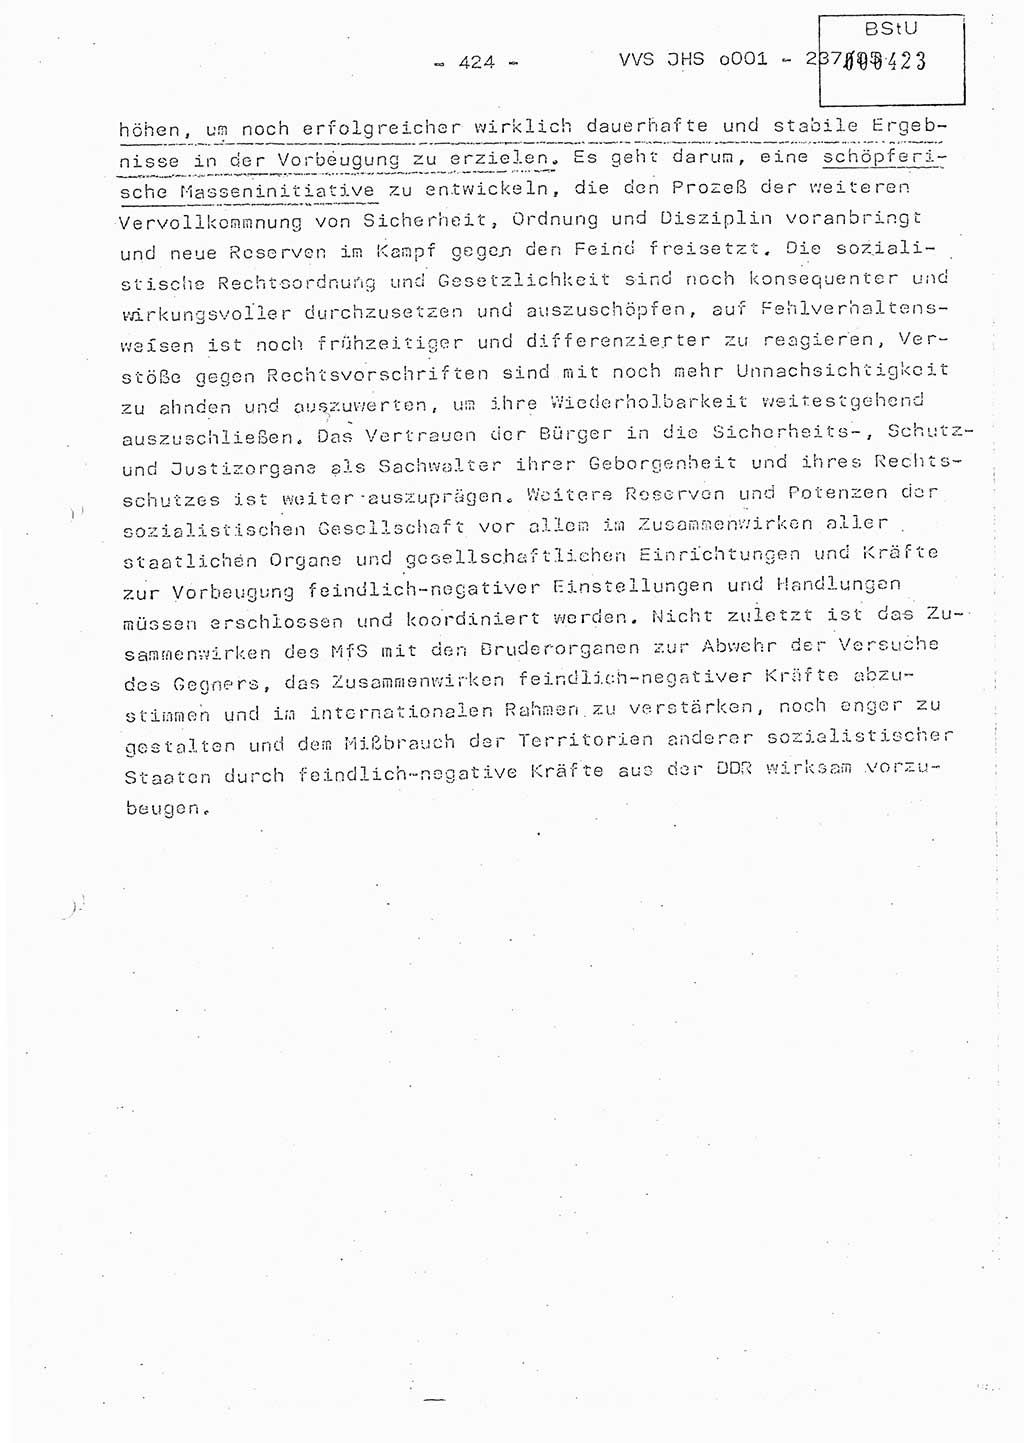 Dissertation Oberstleutnant Peter Jakulski (JHS), Oberstleutnat Christian Rudolph (HA Ⅸ), Major Horst Böttger (ZMD), Major Wolfgang Grüneberg (JHS), Major Albert Meutsch (JHS), Ministerium für Staatssicherheit (MfS) [Deutsche Demokratische Republik (DDR)], Juristische Hochschule (JHS), Vertrauliche Verschlußsache (VVS) o001-237/85, Potsdam 1985, Seite 424 (Diss. MfS DDR JHS VVS o001-237/85 1985, S. 424)